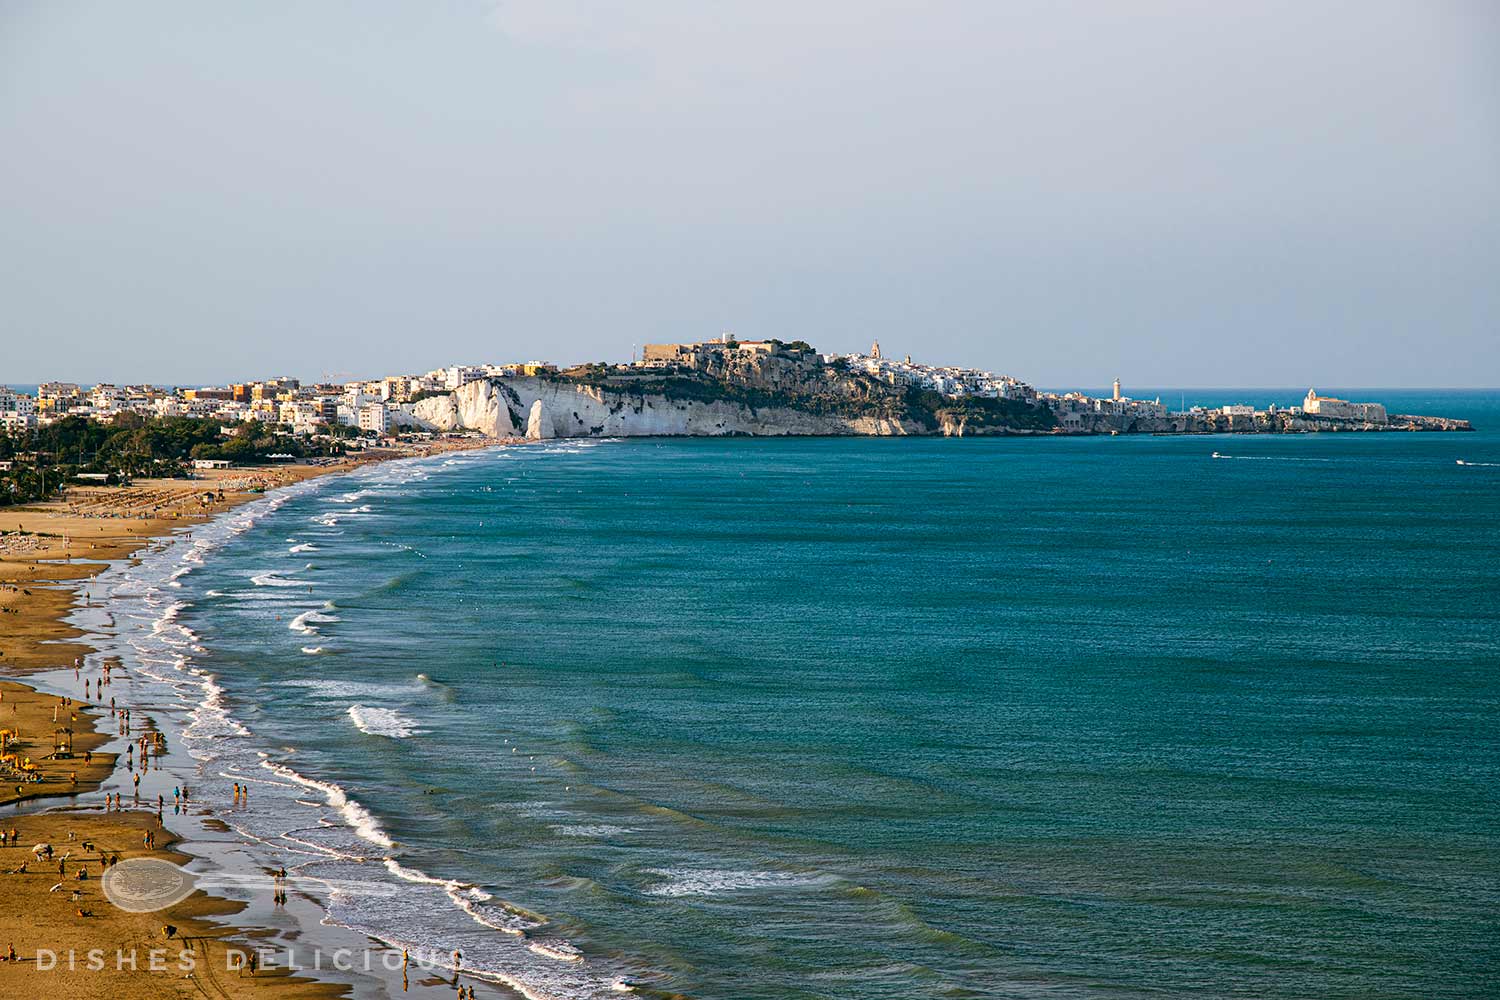 Spiaggia della Scialara mit Vieste im Hintergrund